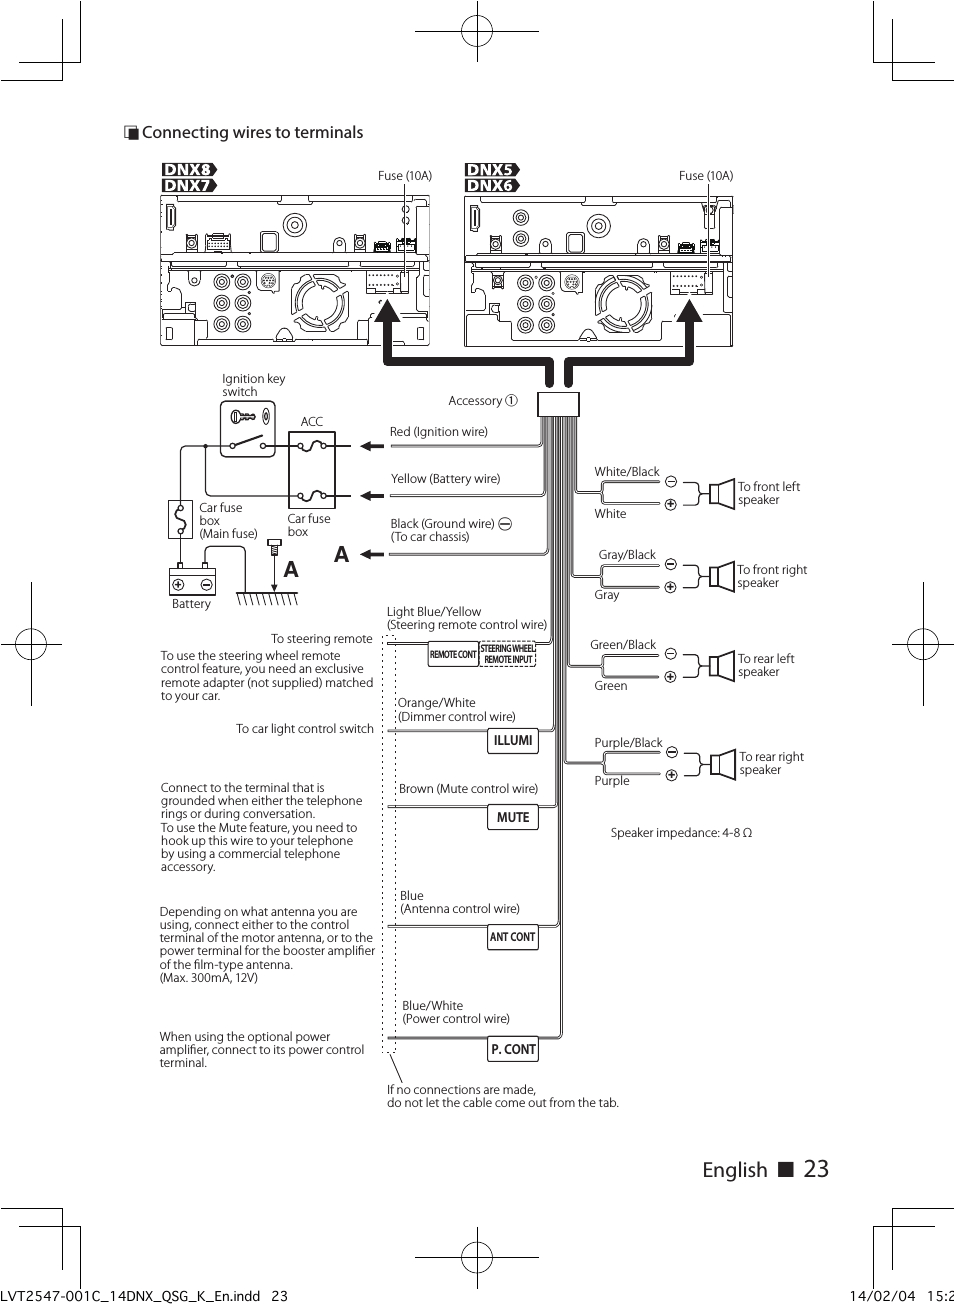 kenwood kdc 248u wiring diagram